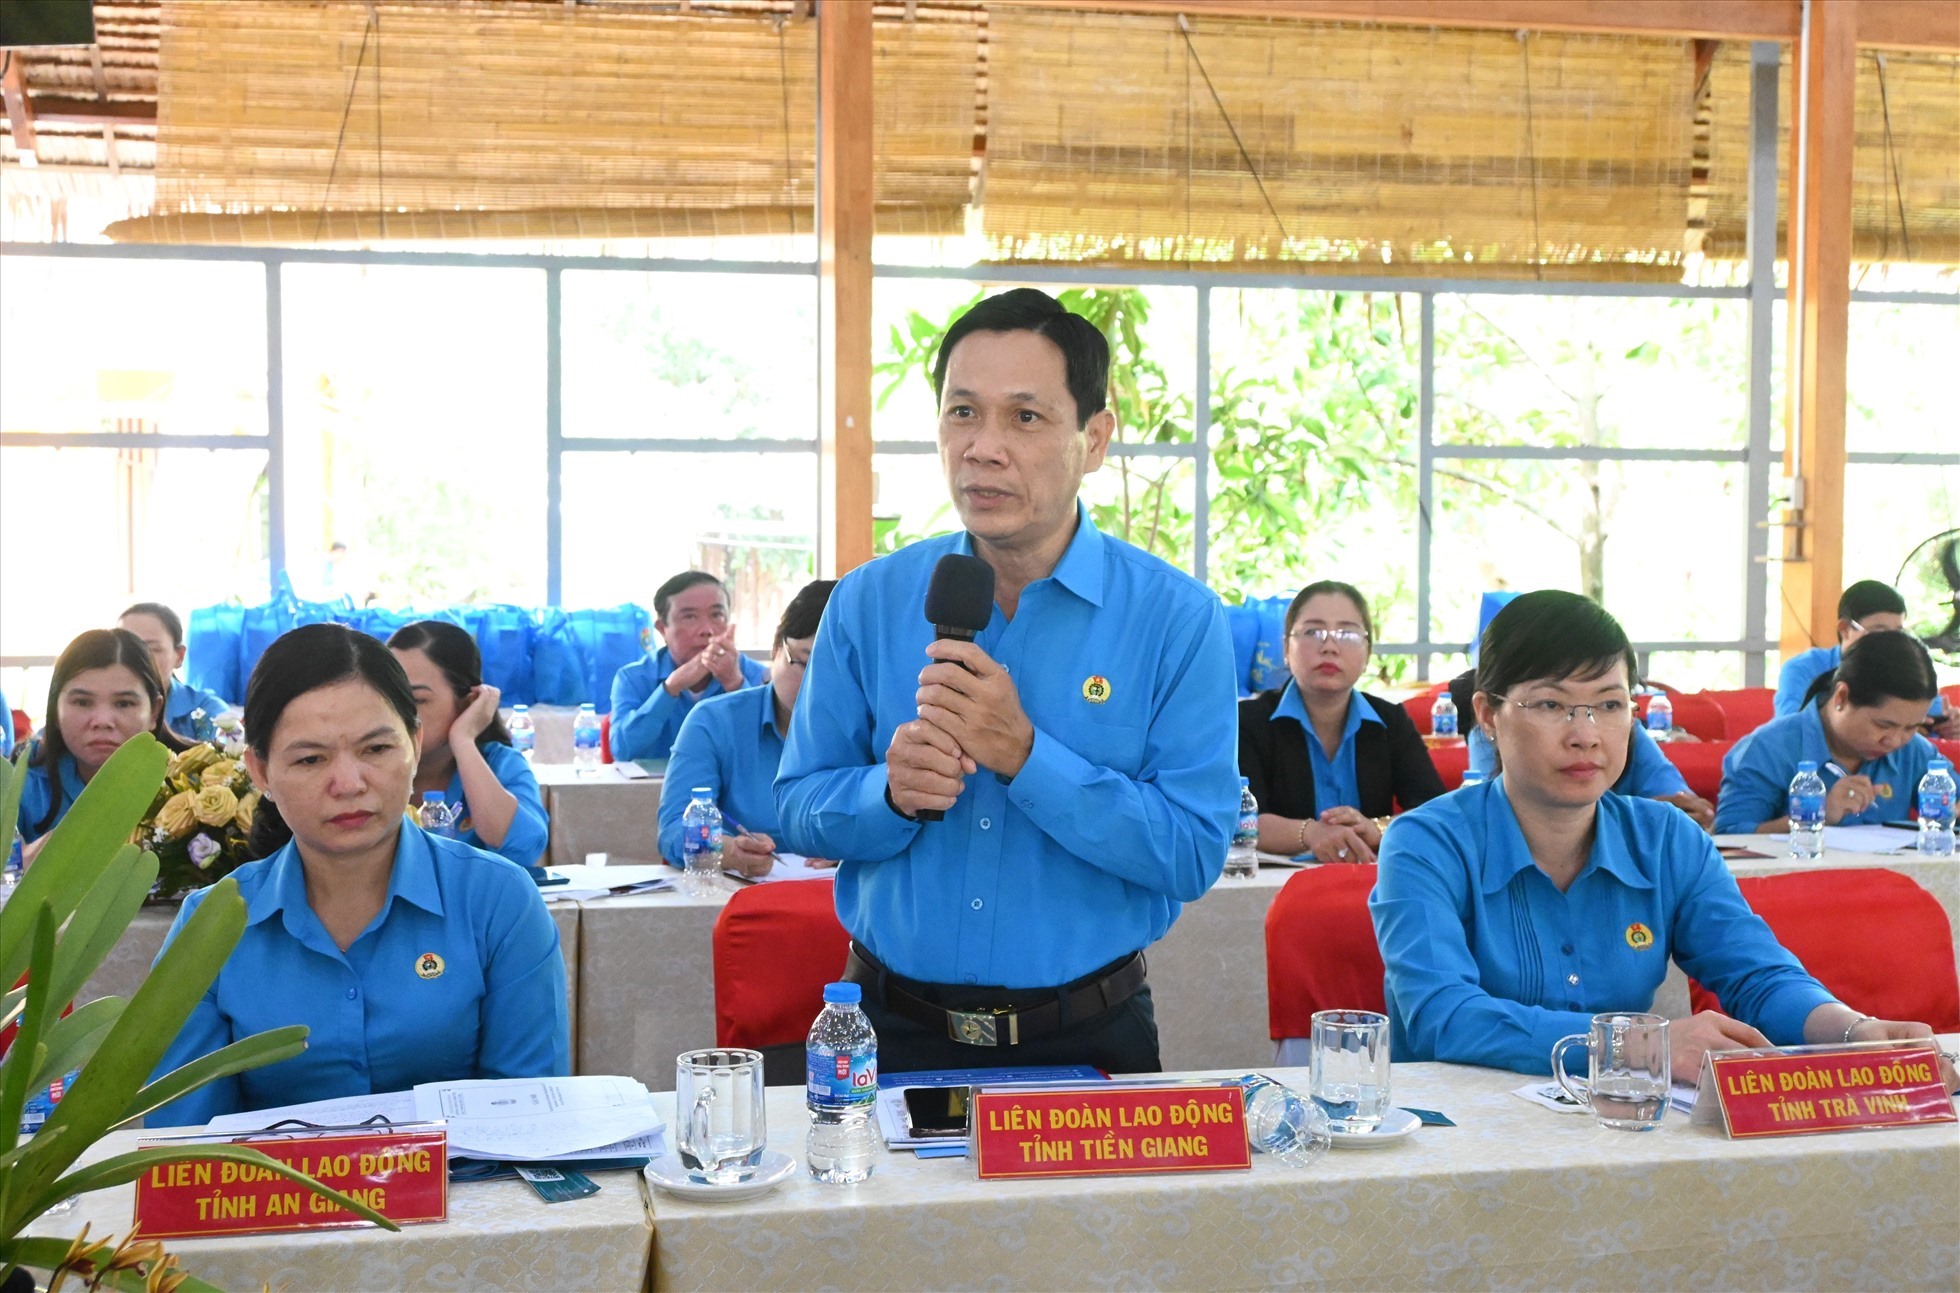 Ông Lê Minh Hùng - Chủ tịch LĐLĐ tỉnh Tiền Giang (đứng giữa) - phát biểu tại hội nghị. Ảnh: Thành Nhân